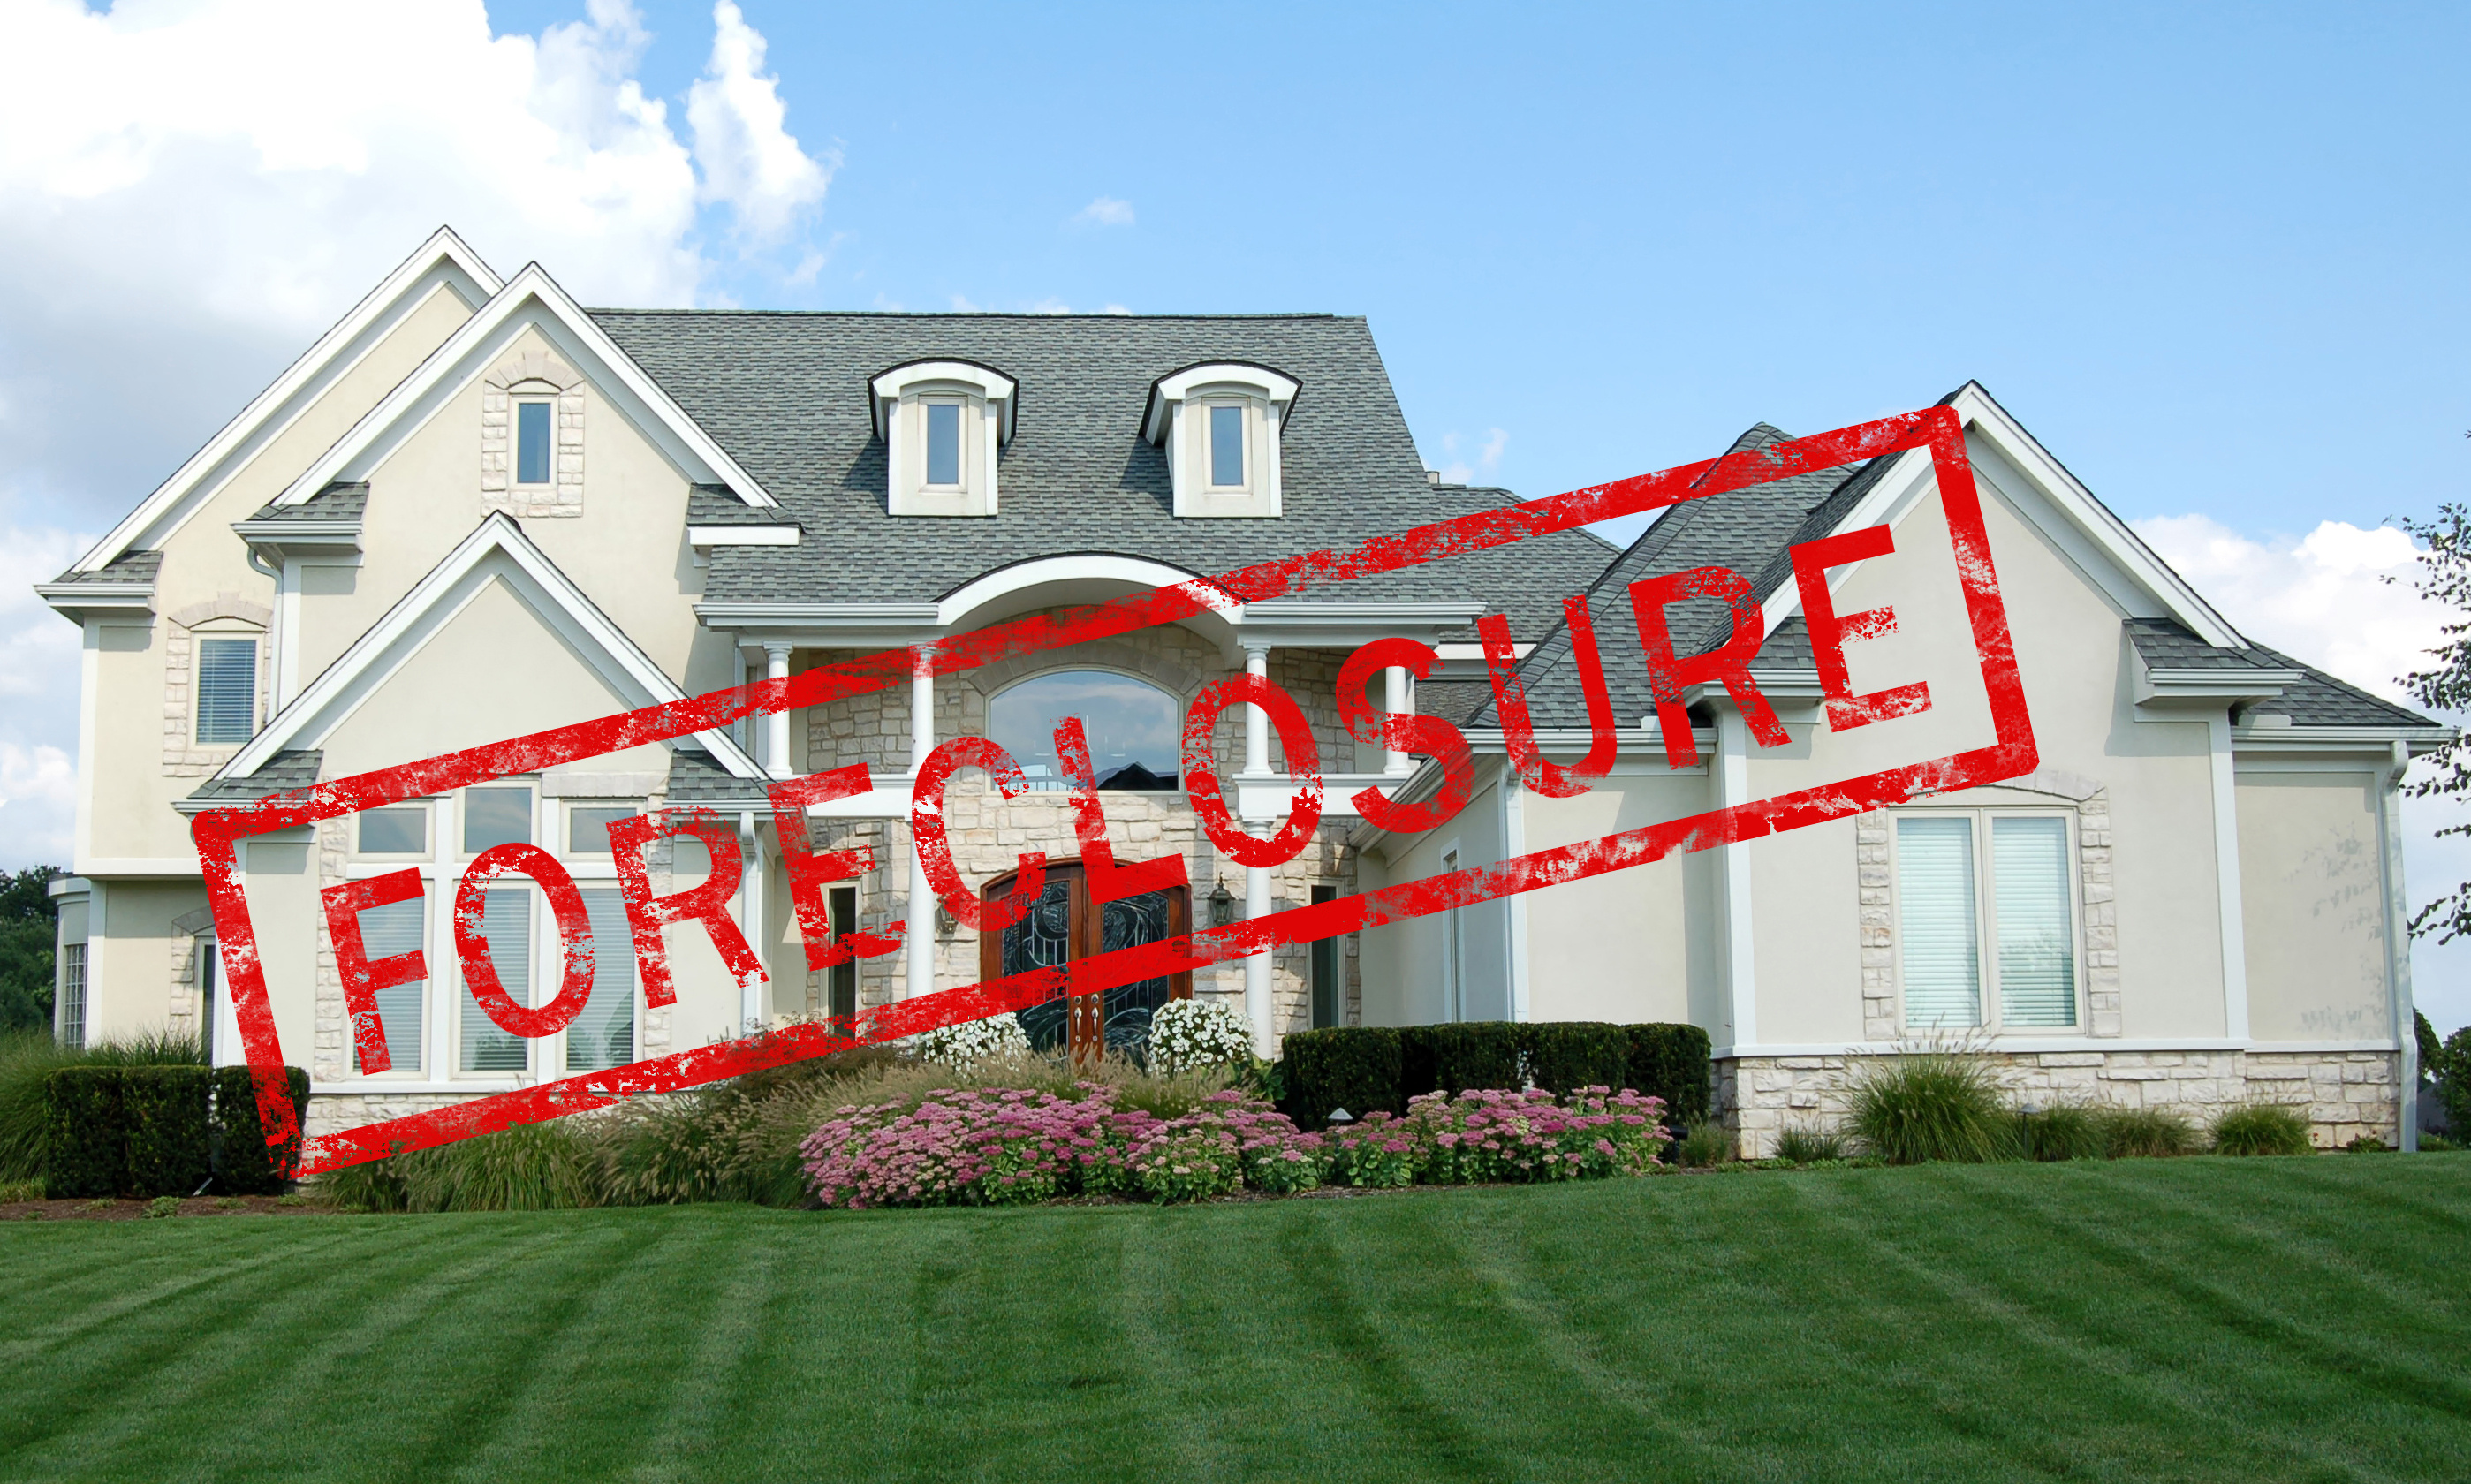 Call Lightspeed Appraisal Group when you need appraisals regarding Jefferson foreclosures